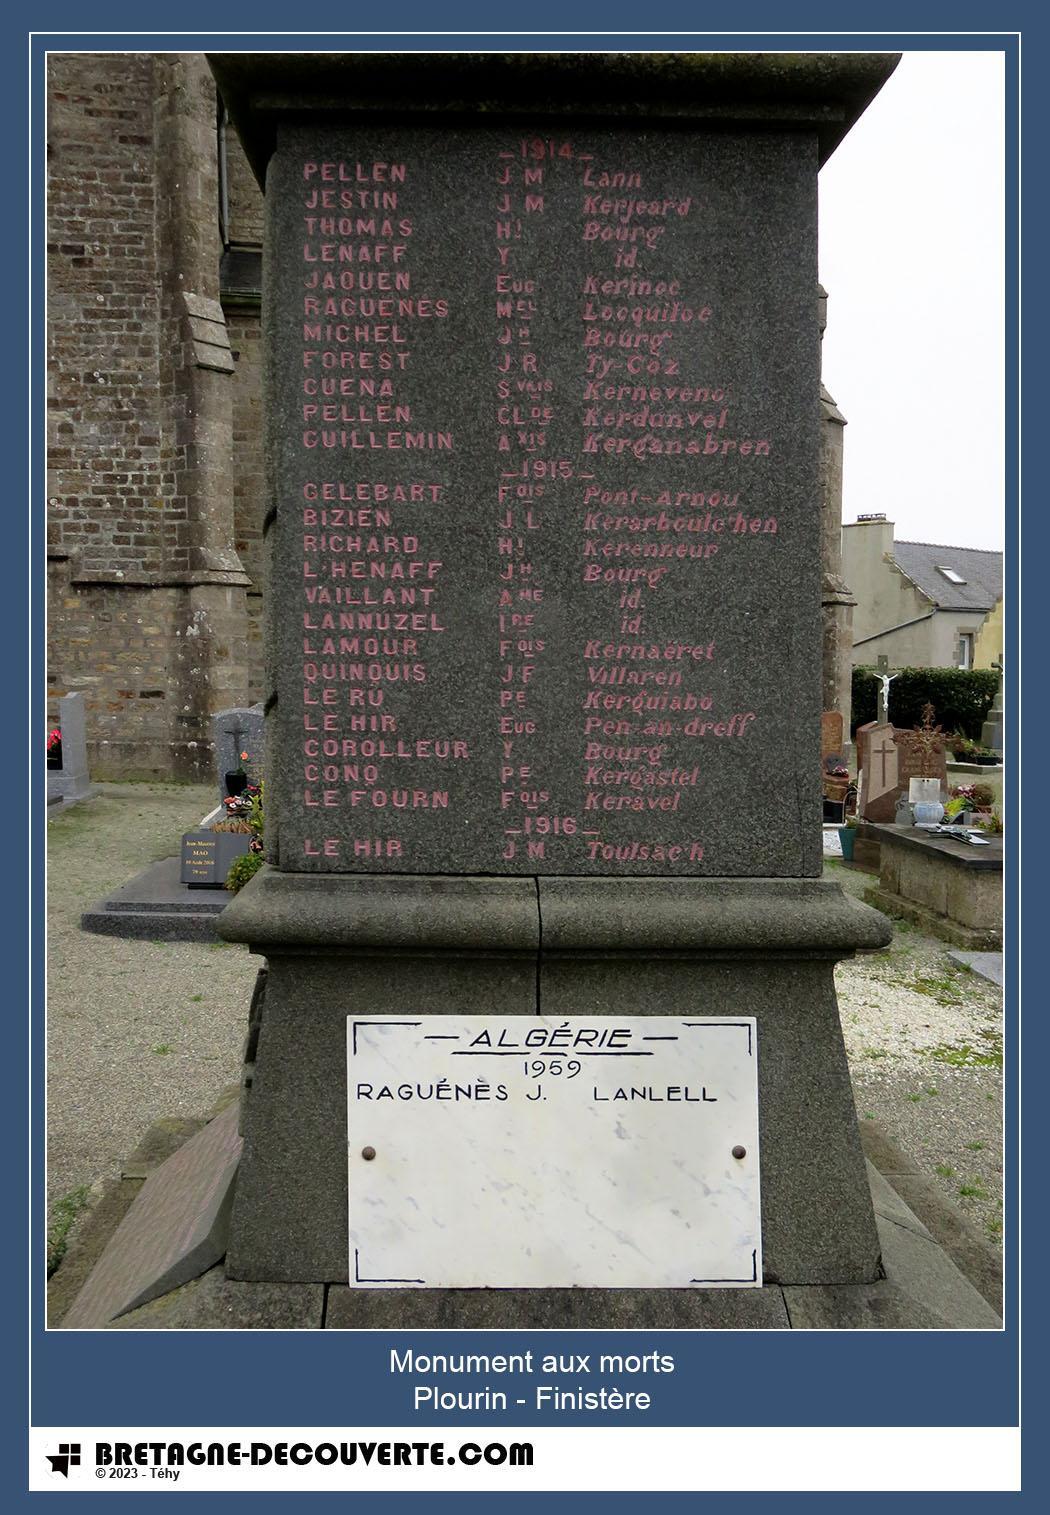 Les noms gravés sur le monument aux morts de Plourin